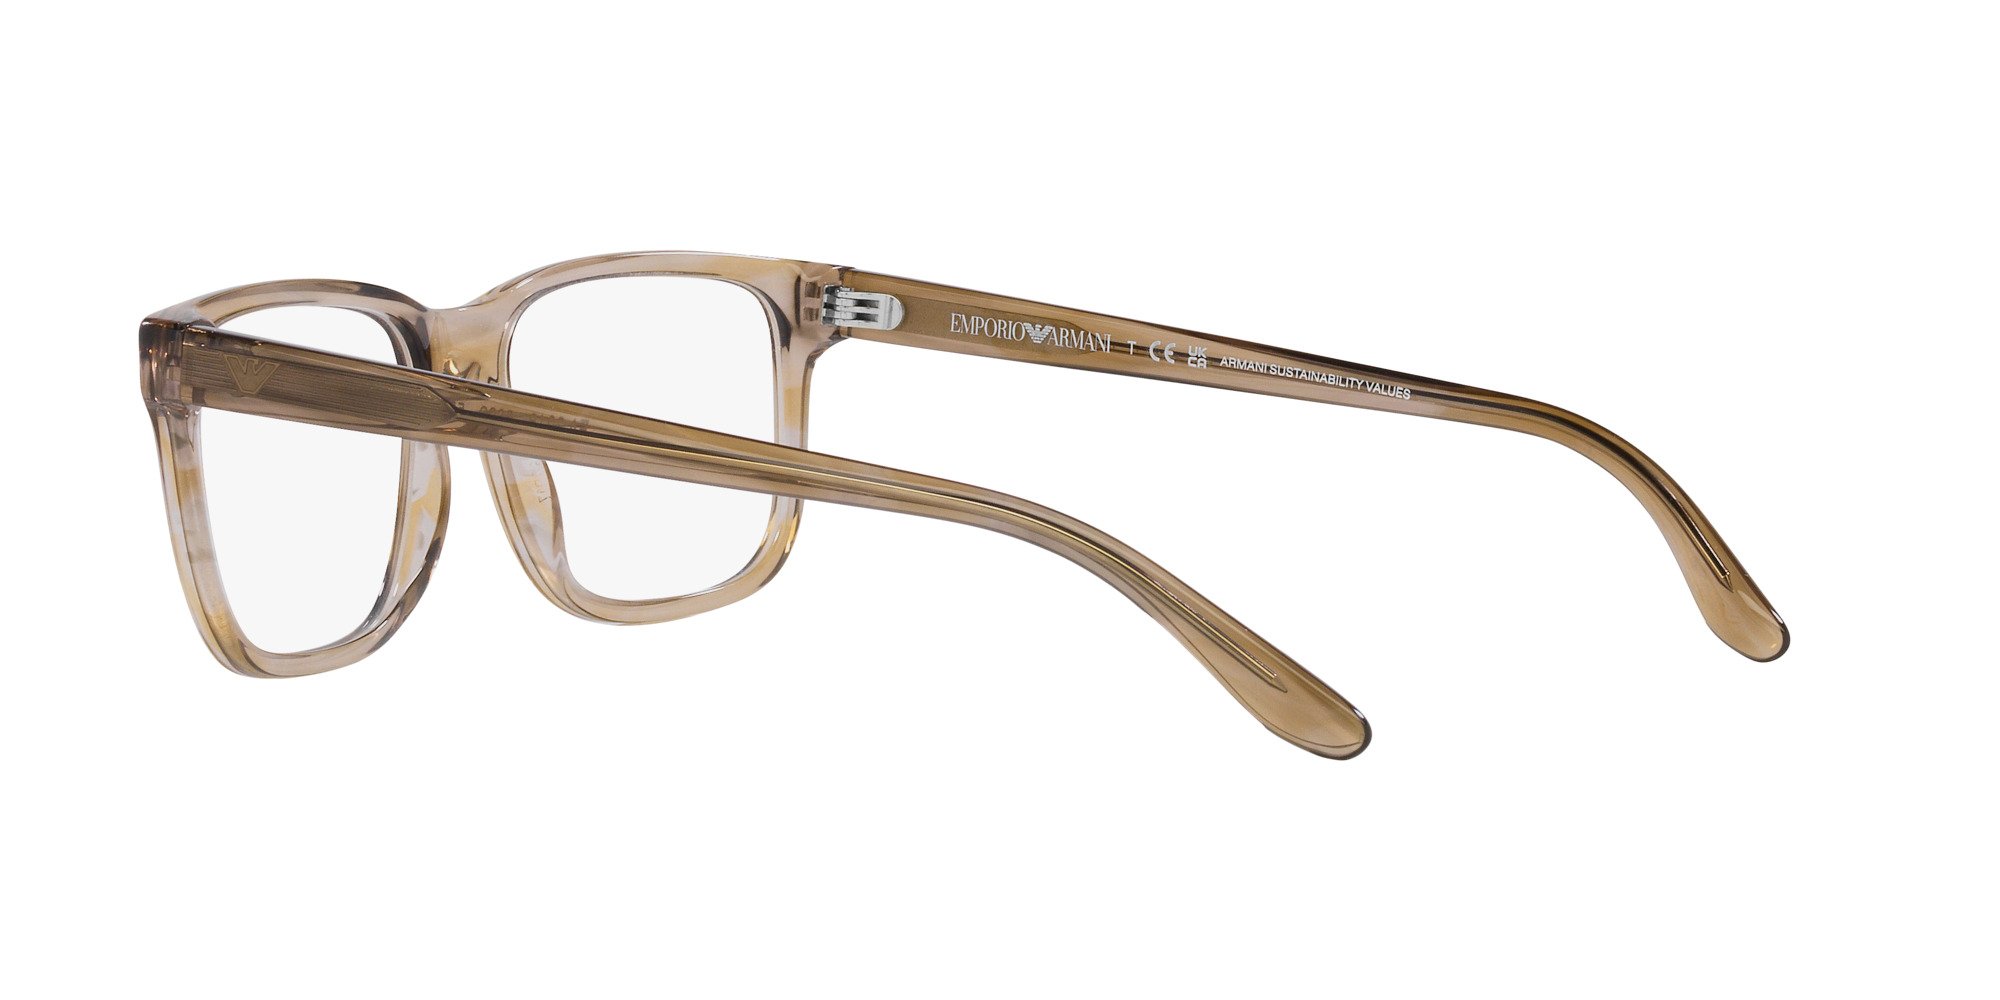 Das Bild zeigt die Korrektionsbrille EA3218 5099 von der Marke Emporio Armani in Braun.